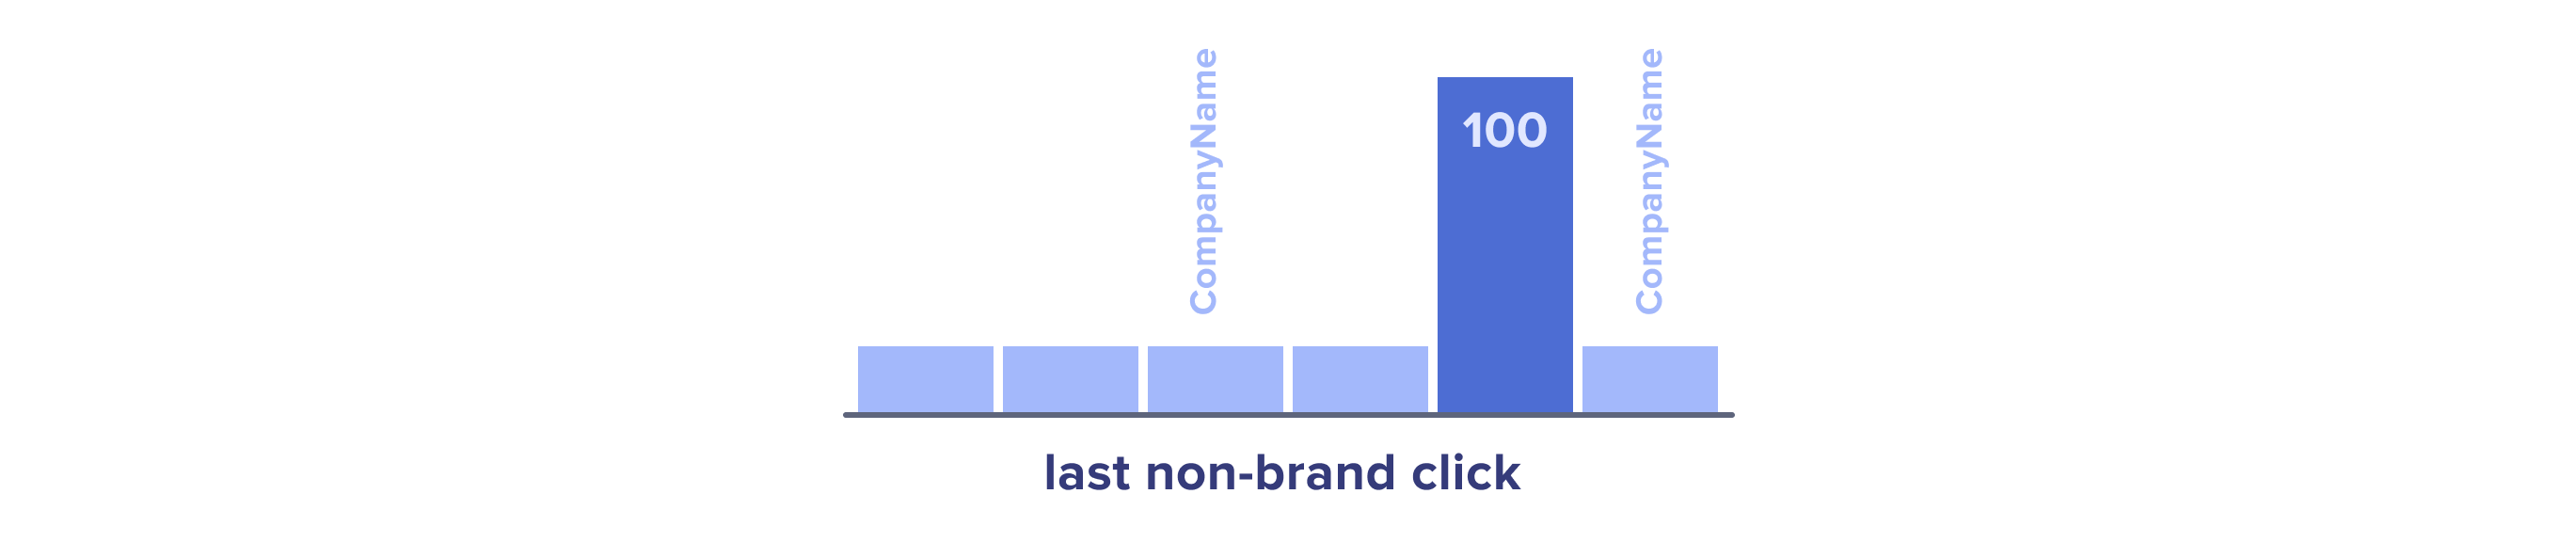 Last non-brand click attribution model